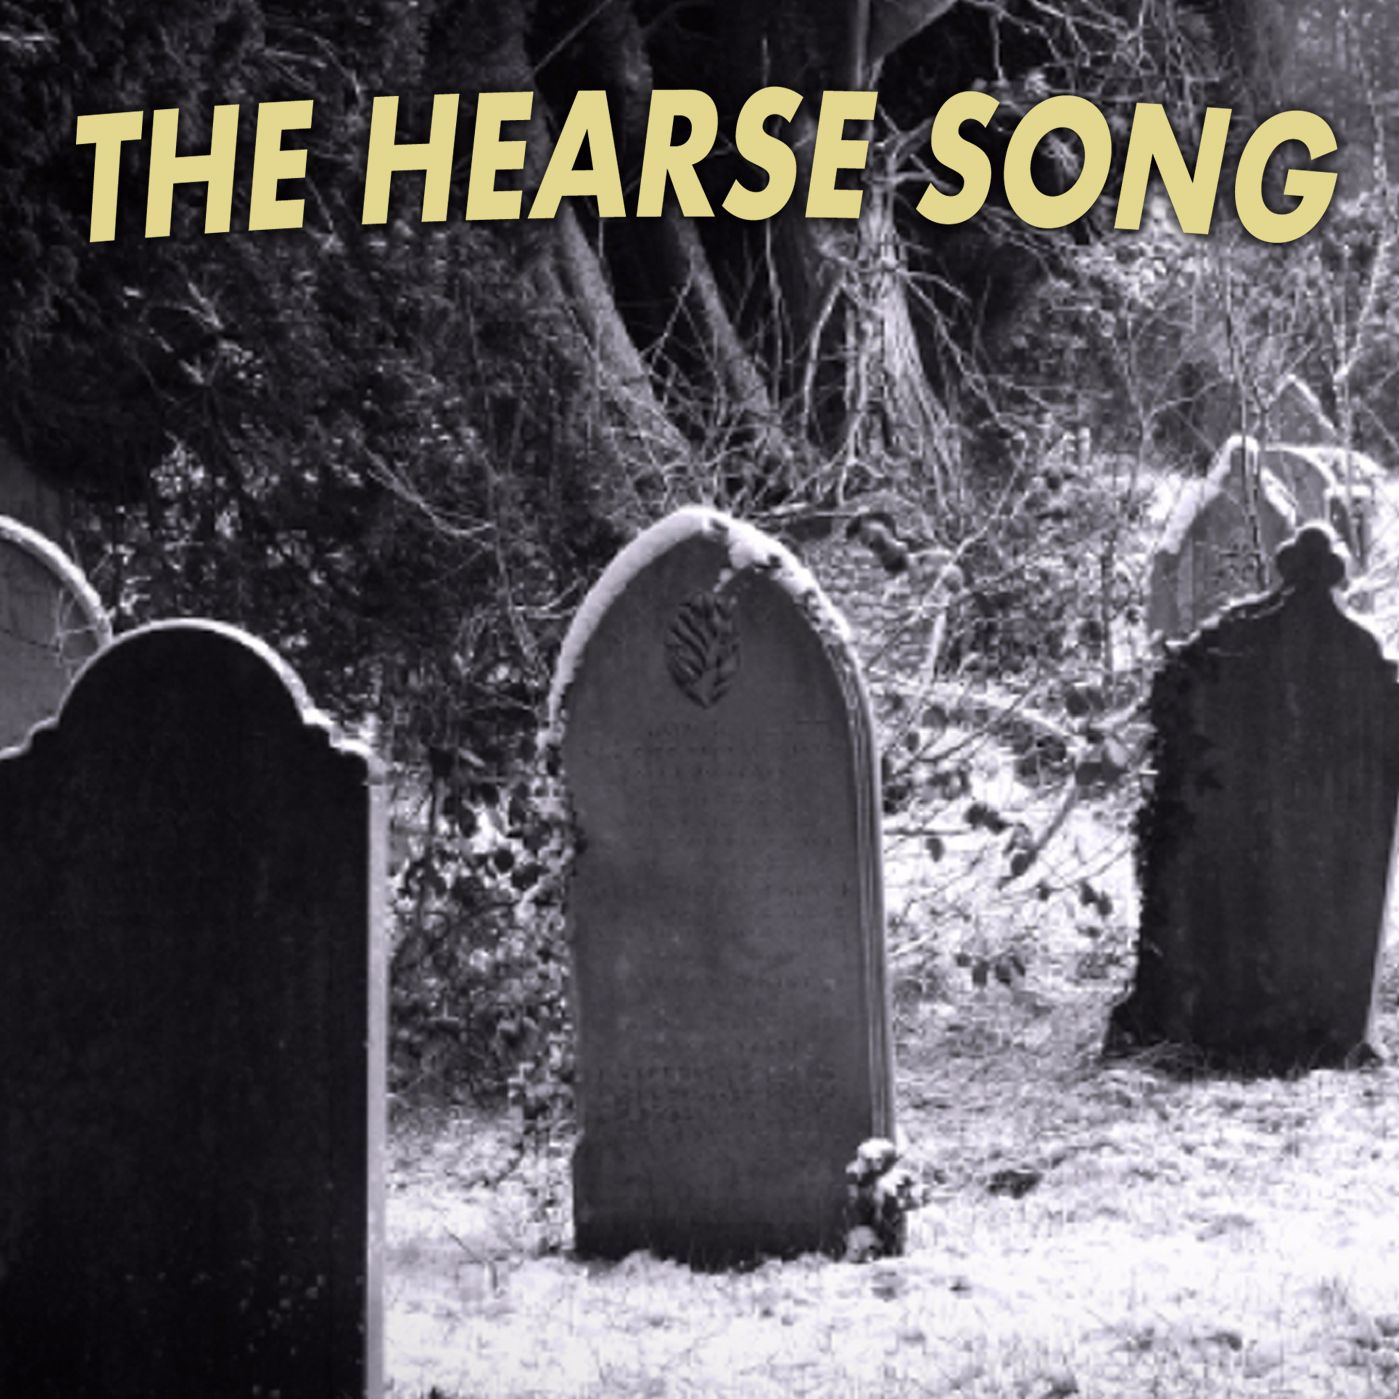 Stiahnuť ▼ The Hearse Song